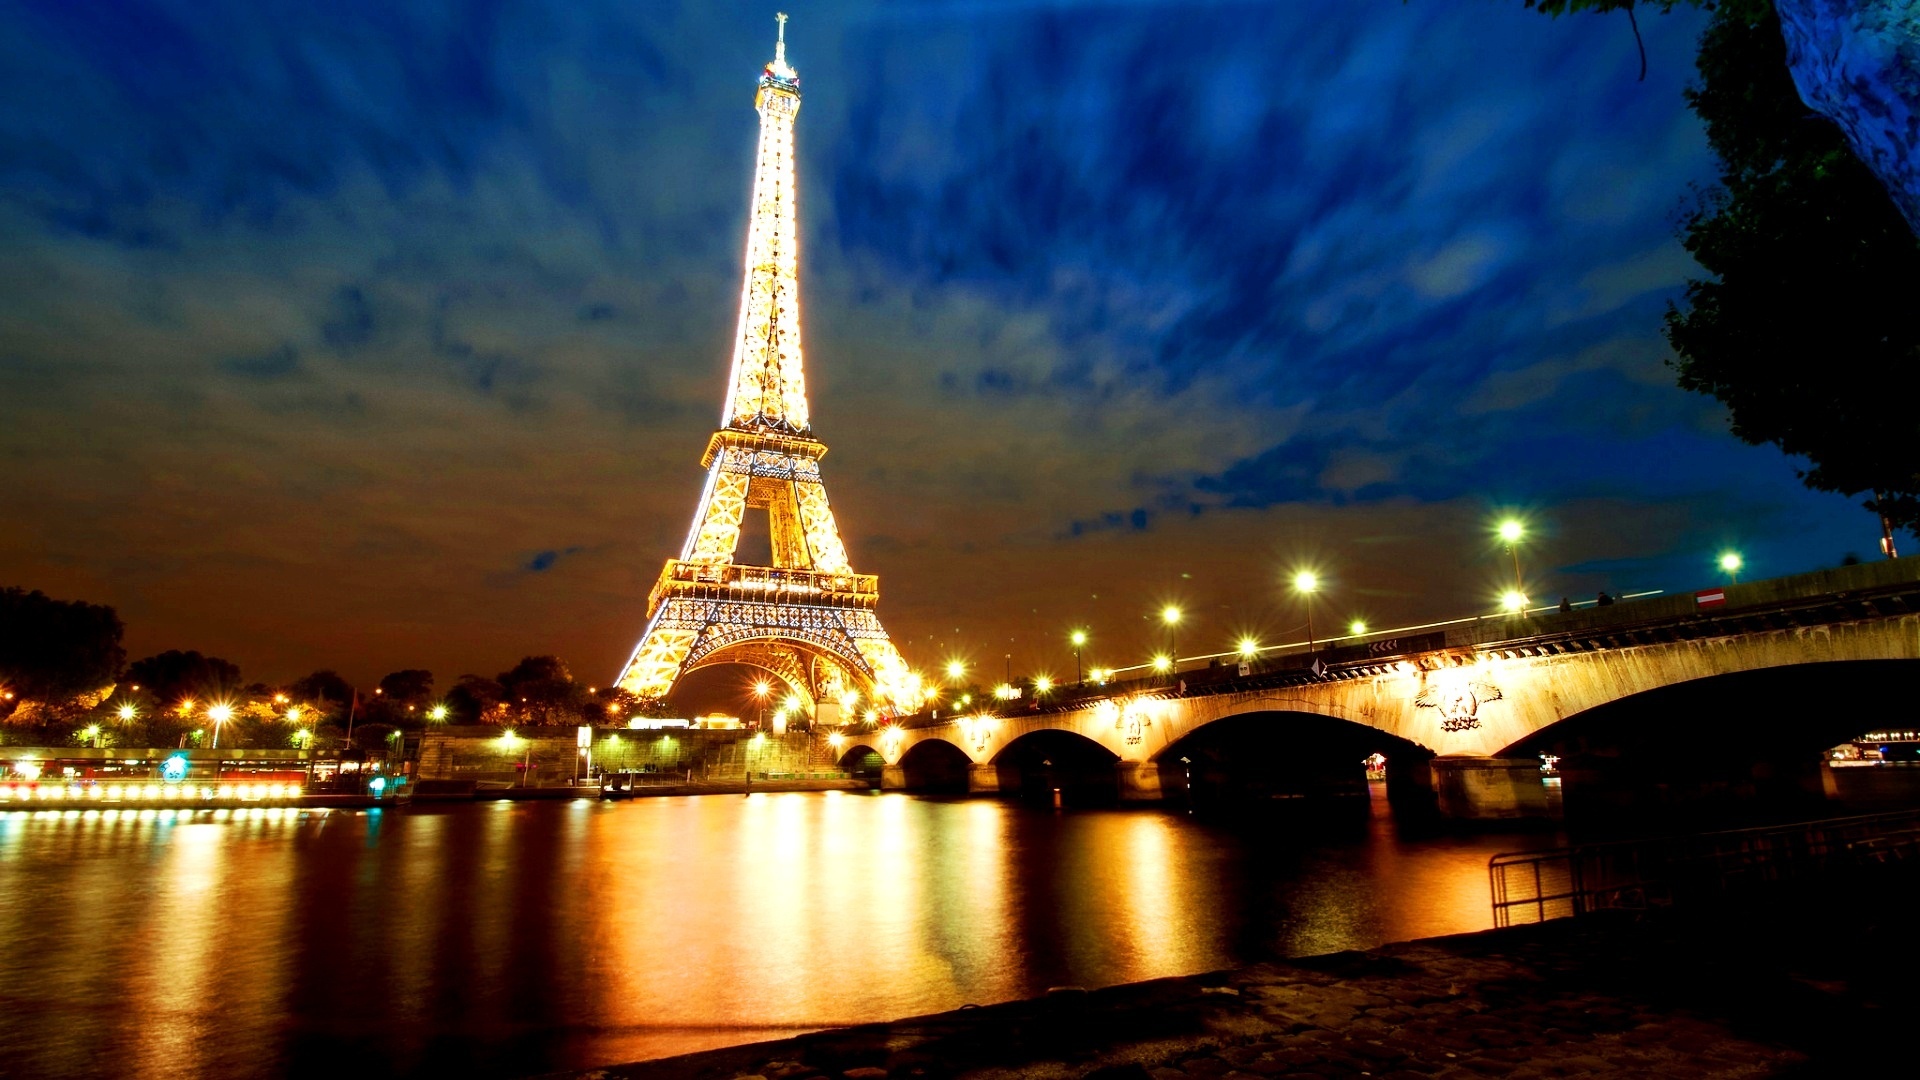 法国埃菲尔铁塔风景图片壁纸高清原图下载,法国埃菲尔铁塔风景图片壁纸,高清图片,壁纸,自然风景-桌面城市